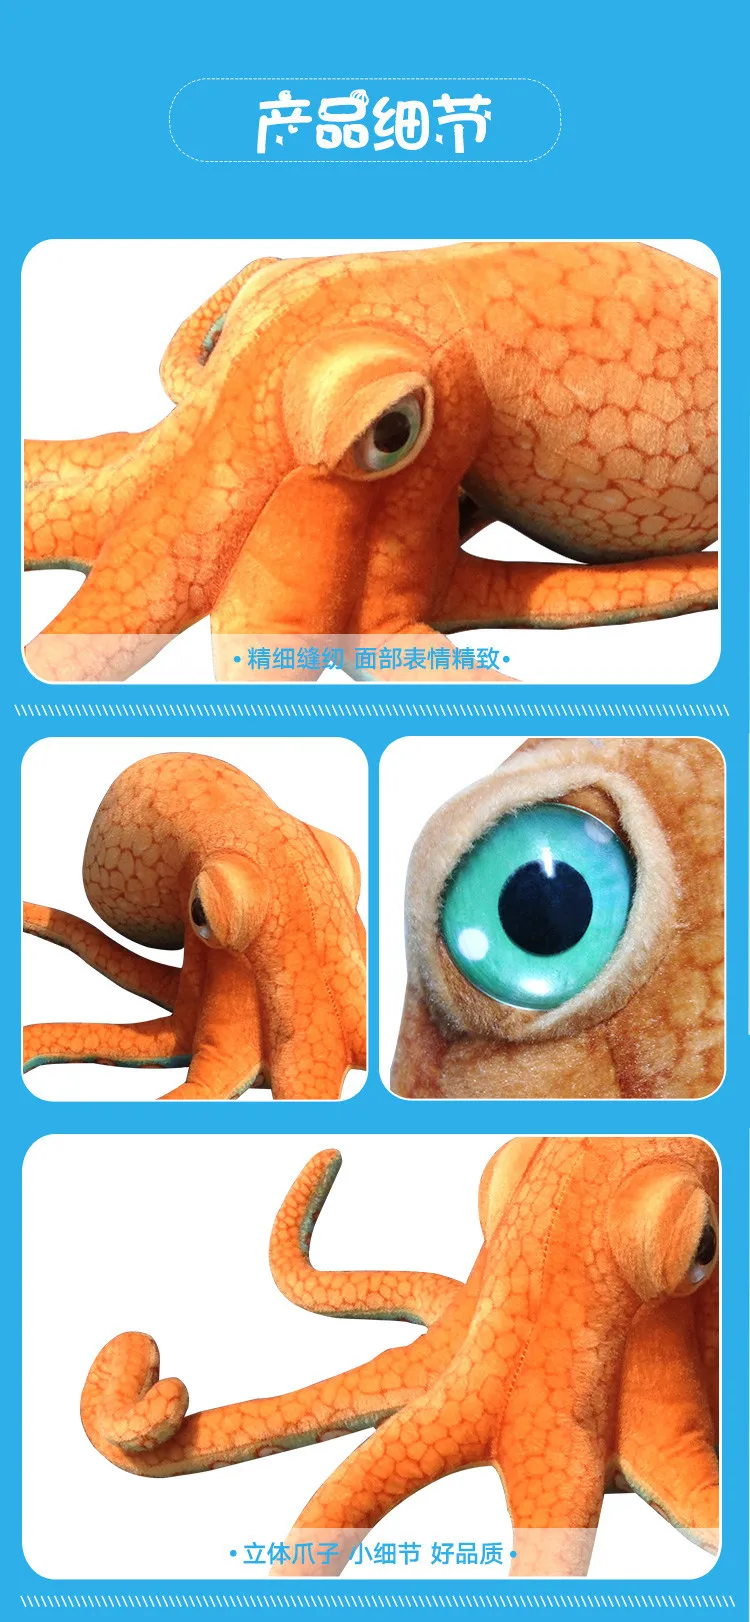 Гигантский прекрасный моделирование осьминог плюшевые мягкие игрушки животных аксессуары для дома реалистичные кукла Осьминог подарки для детей